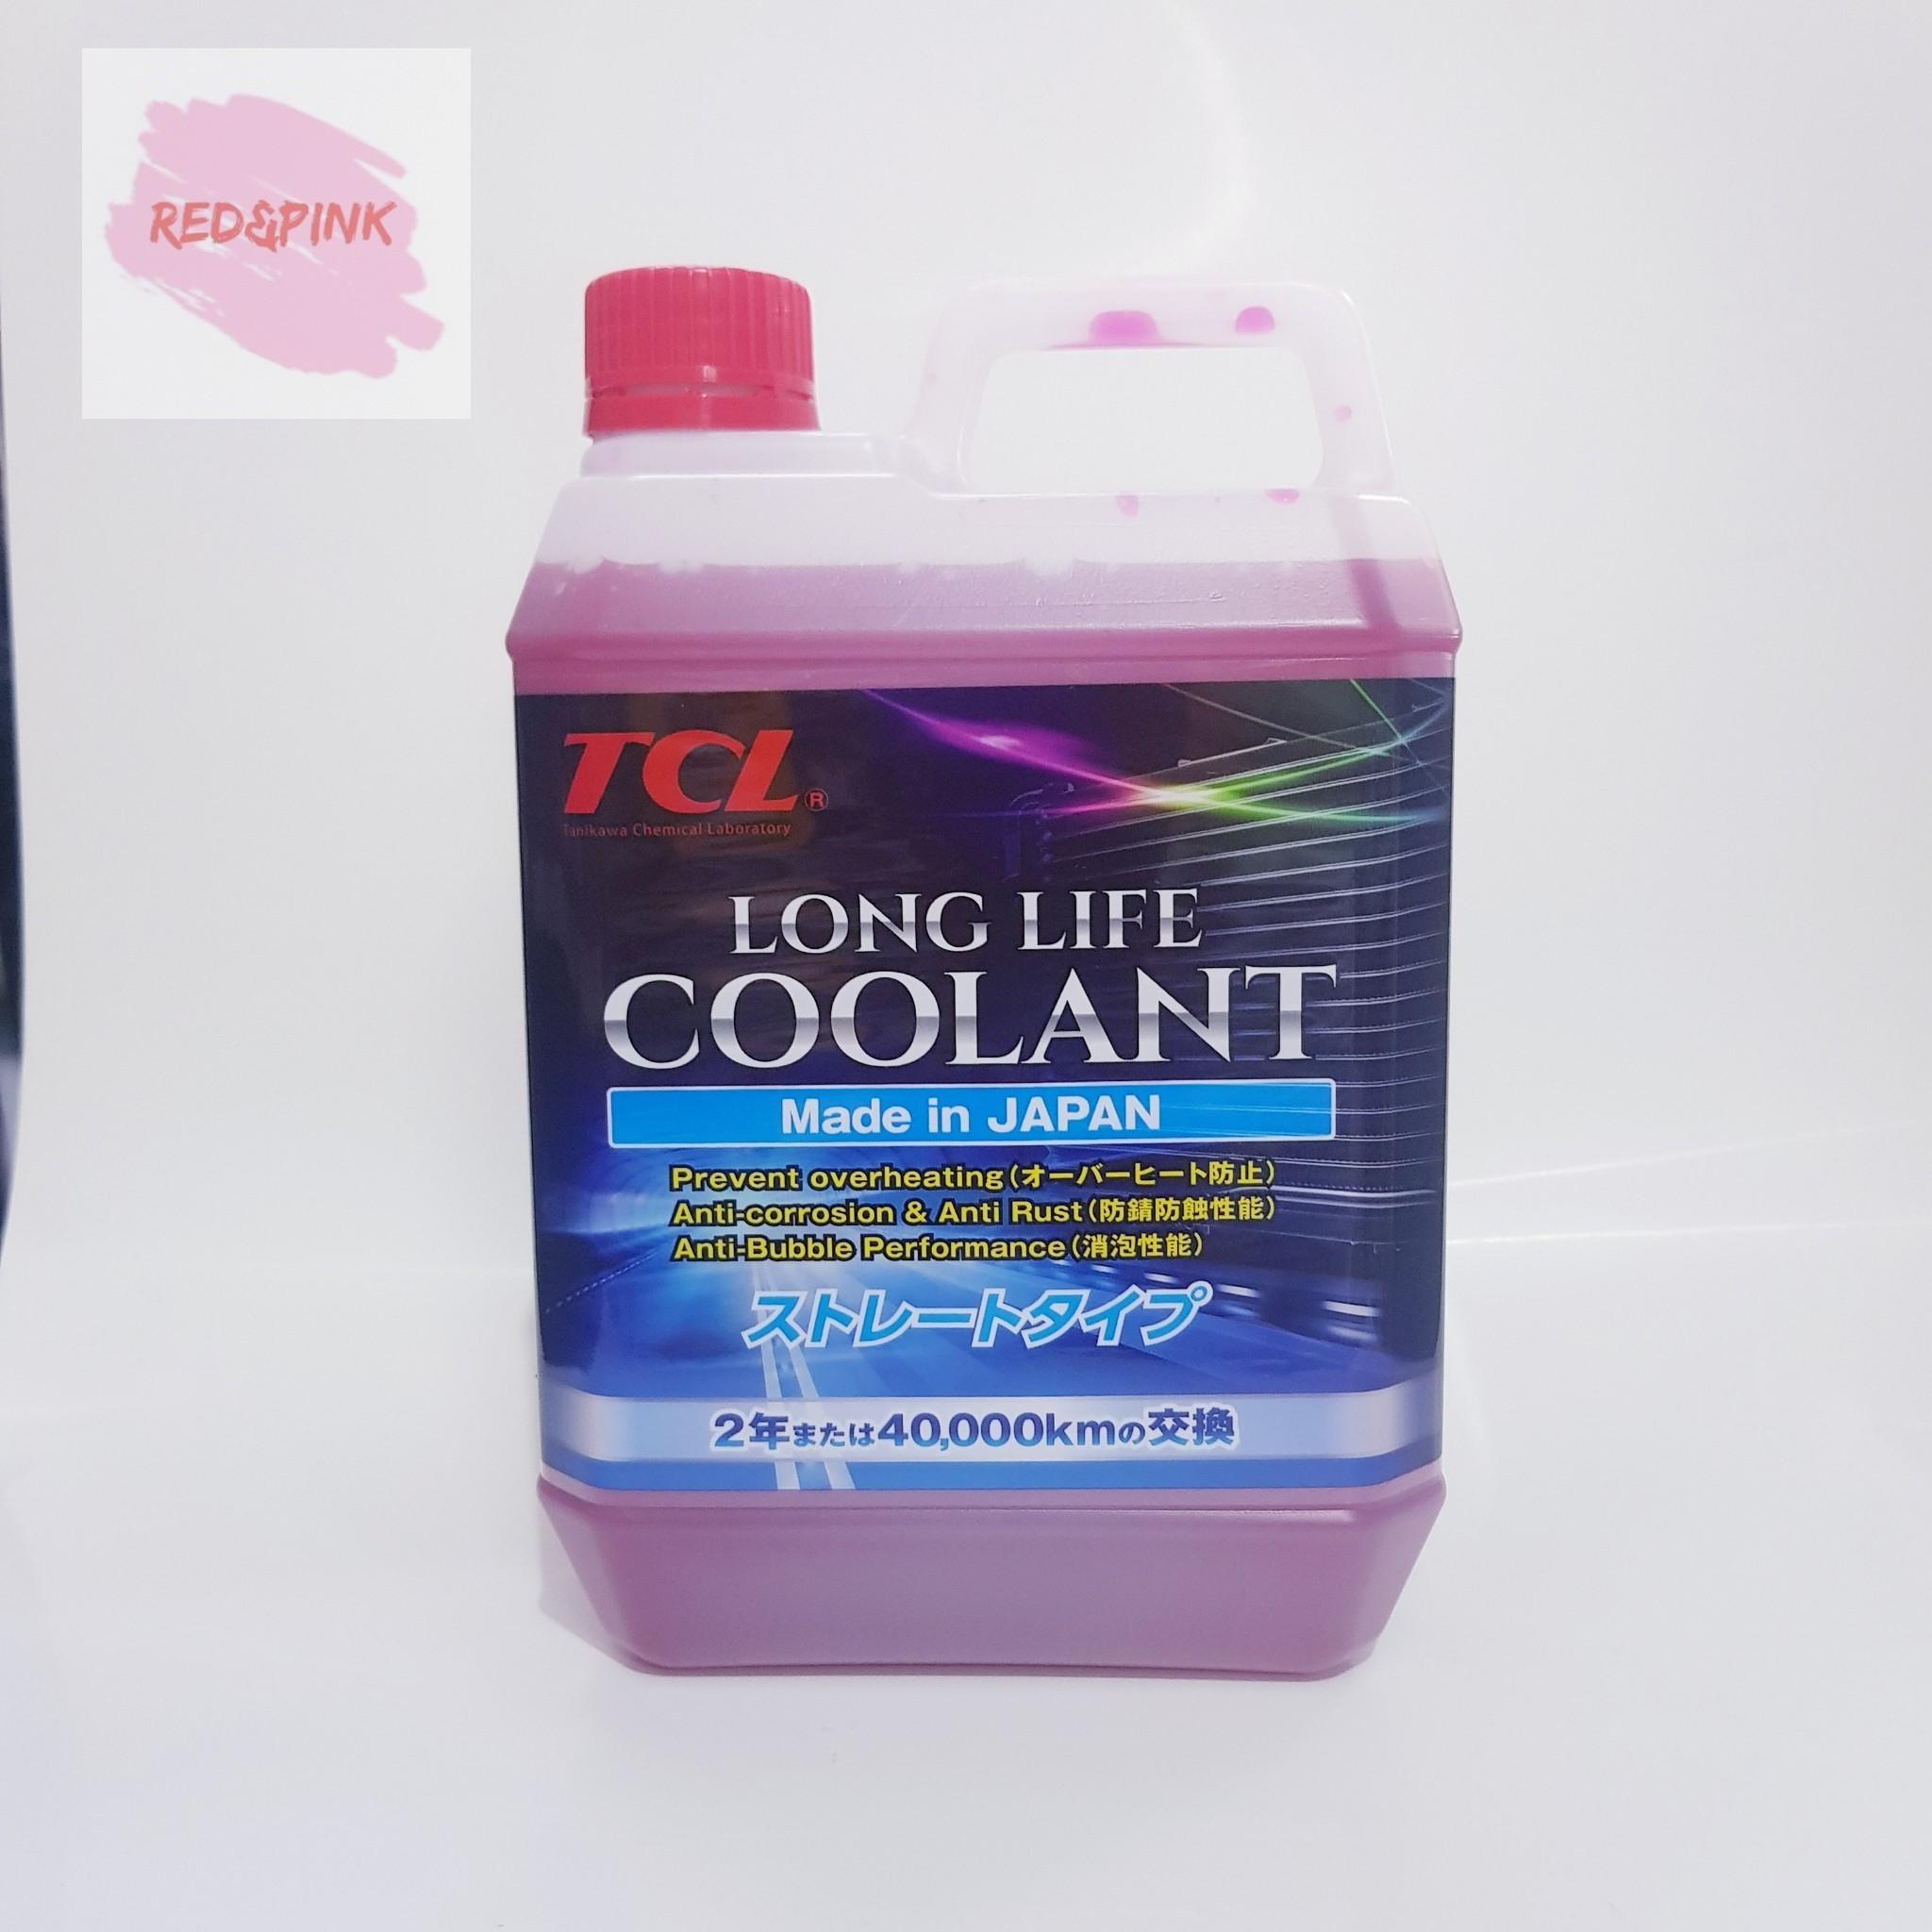 น้ำยาหล่อเย็นหม้อน้ำ ยี่ห้อ TCL ขนาด 2 ลิตร สำหรับรถยนต์ทุกรุ่น (สีแดง)